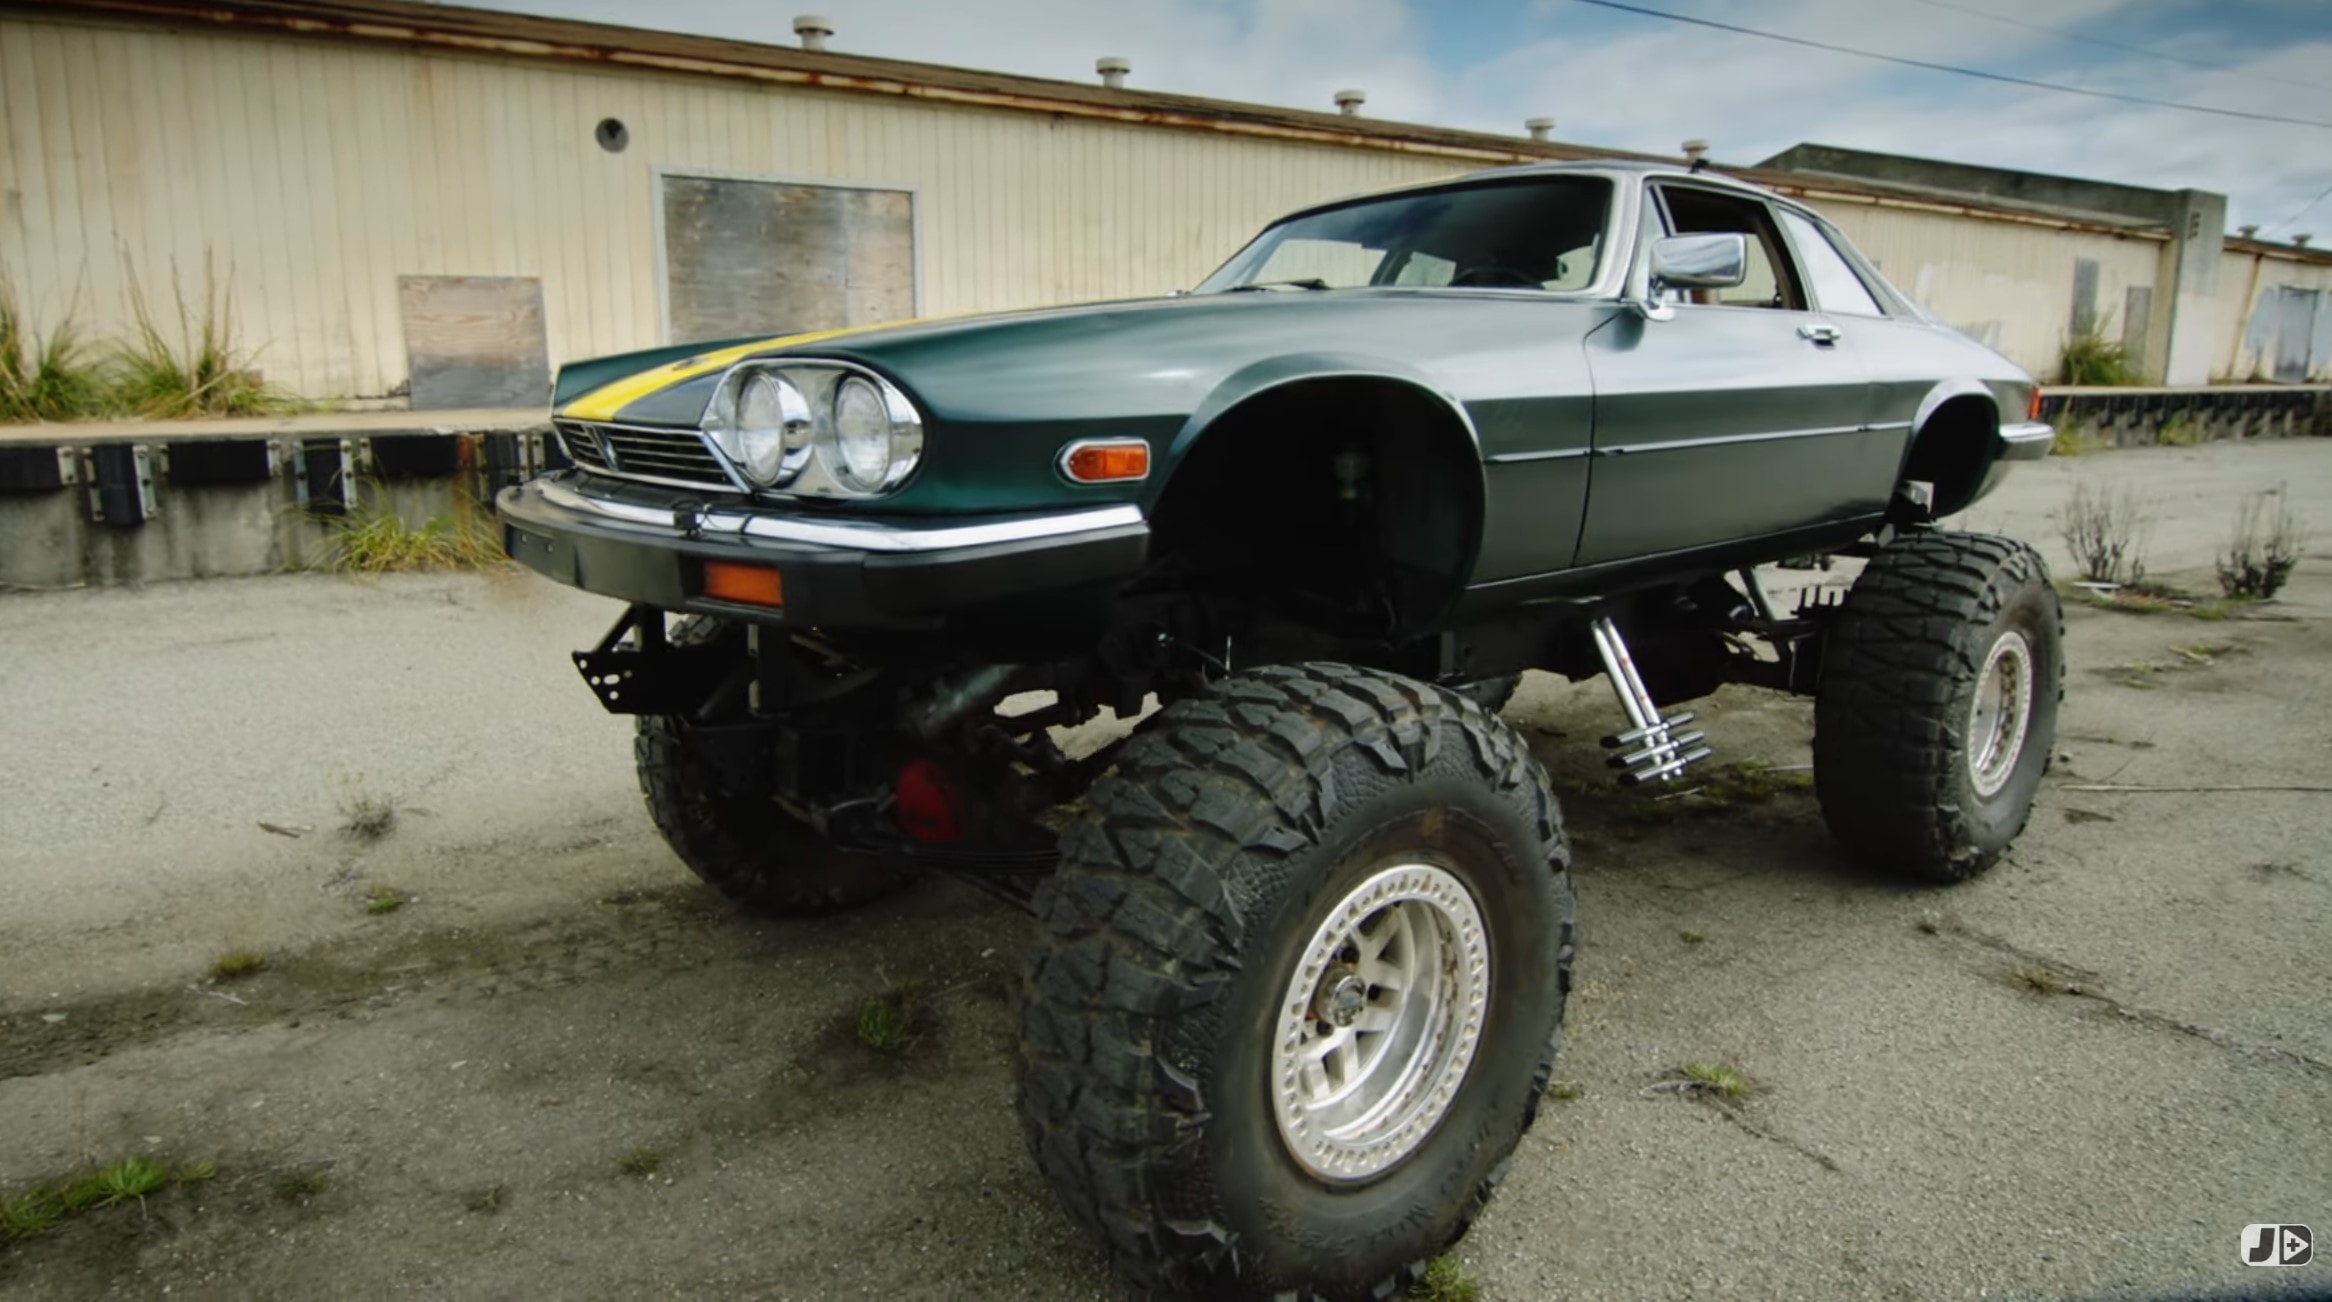 Ren og skær Materialisme tage The Team of Top Gear USA Reimagines Jeremy's Excellent in a Jaguar Monster- Truck - autoevolution